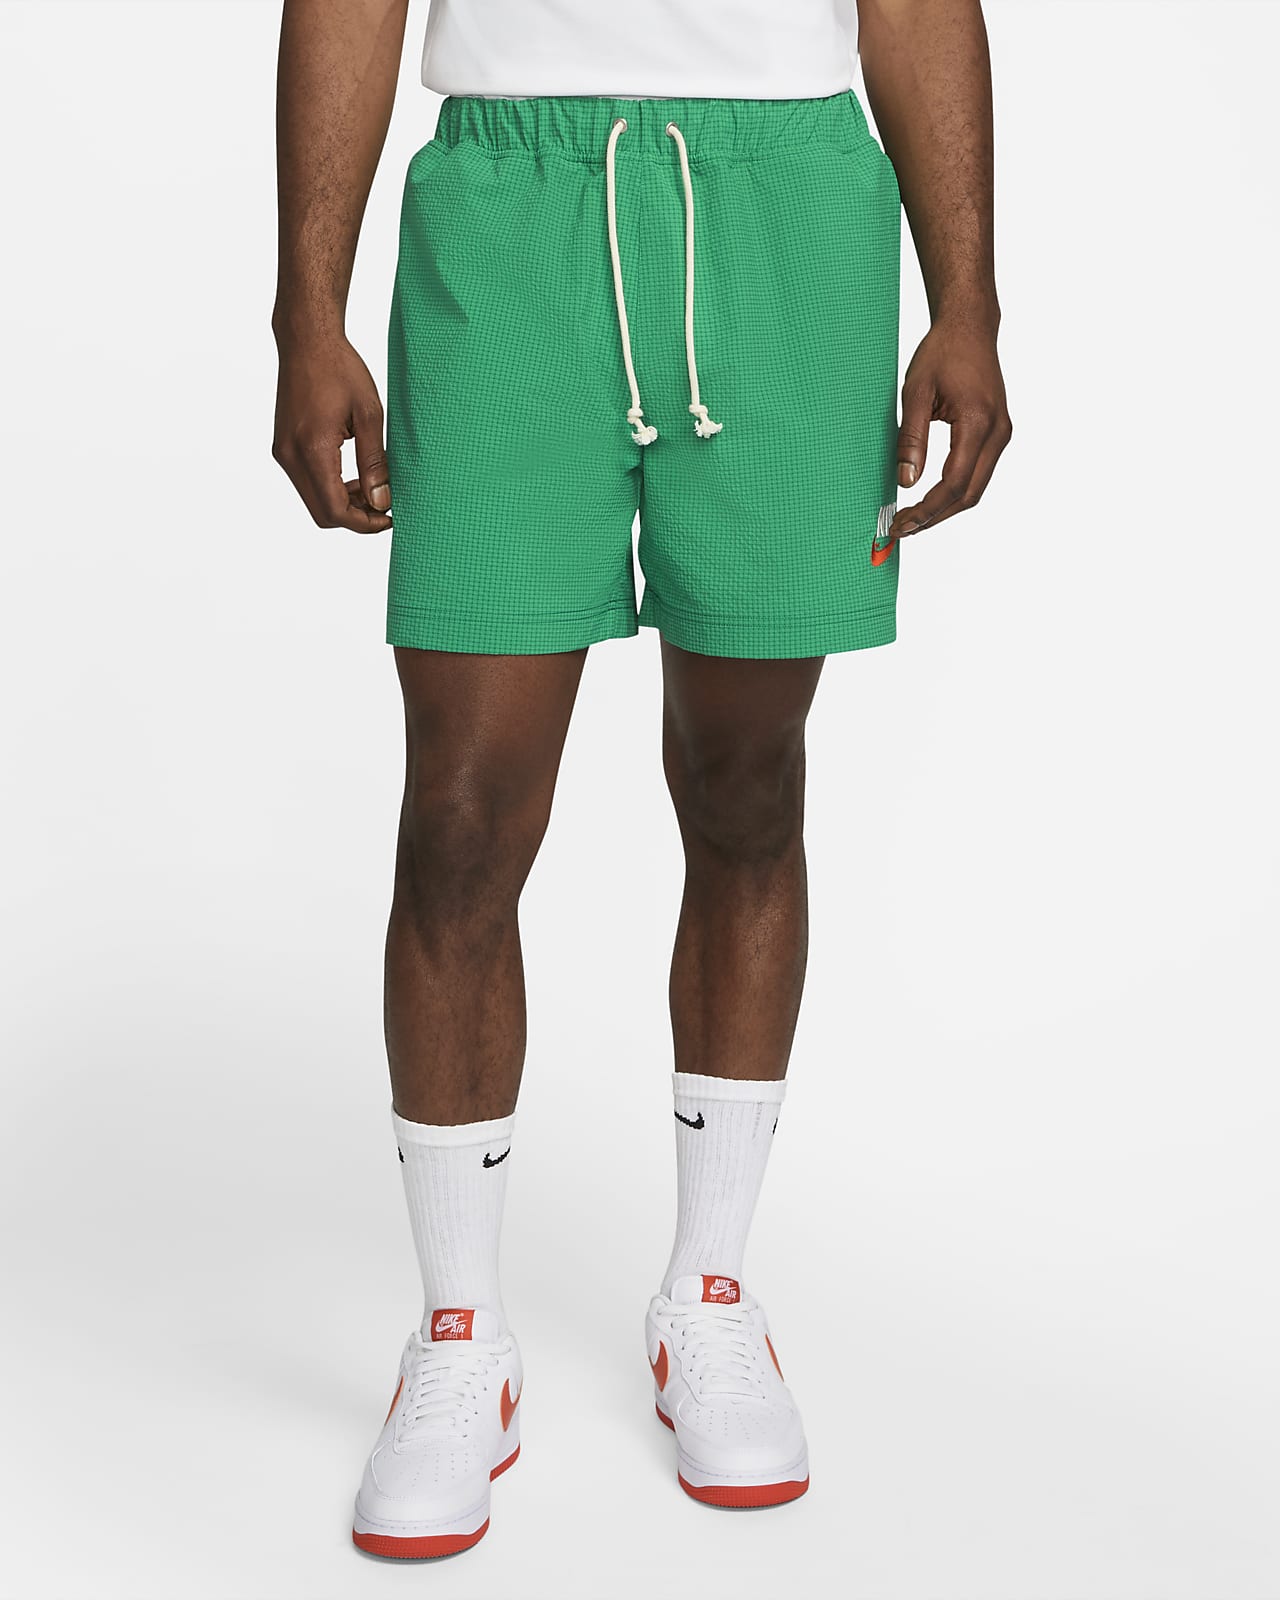 Ανδρικό υφαντό σορτς με επένδυση Nike Sportswear